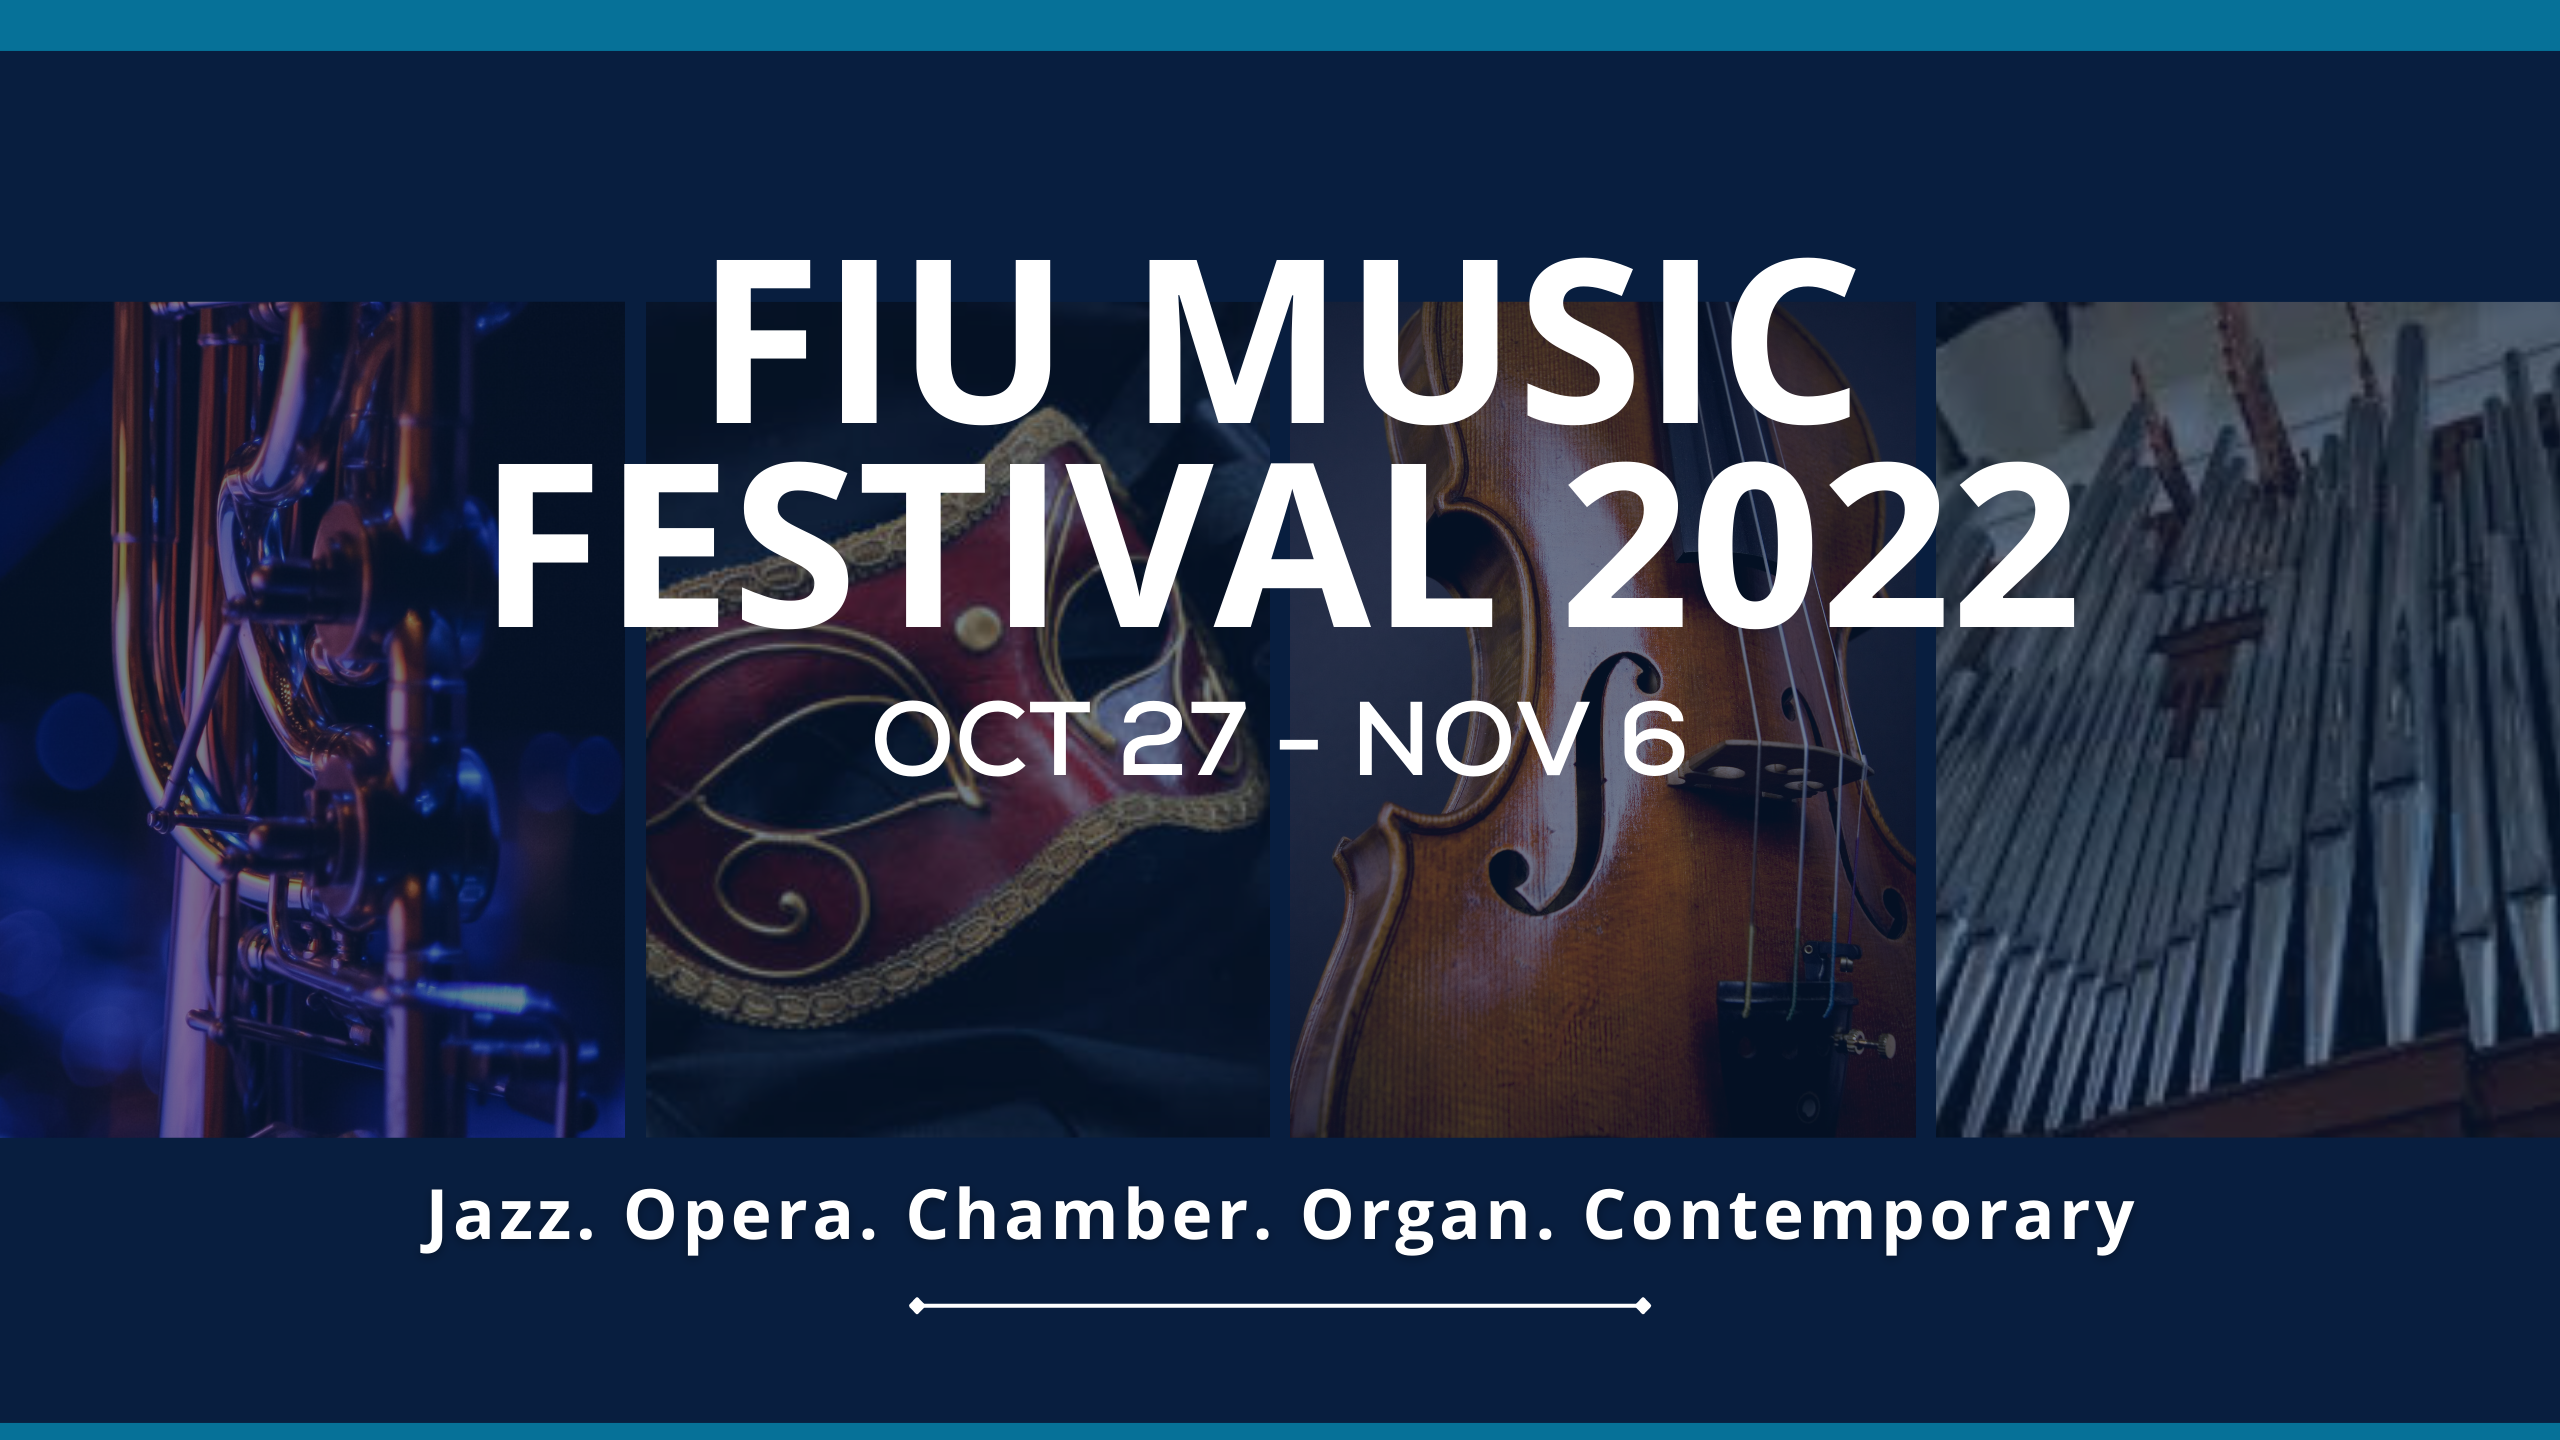 FIU_Music_Festival_2022_2